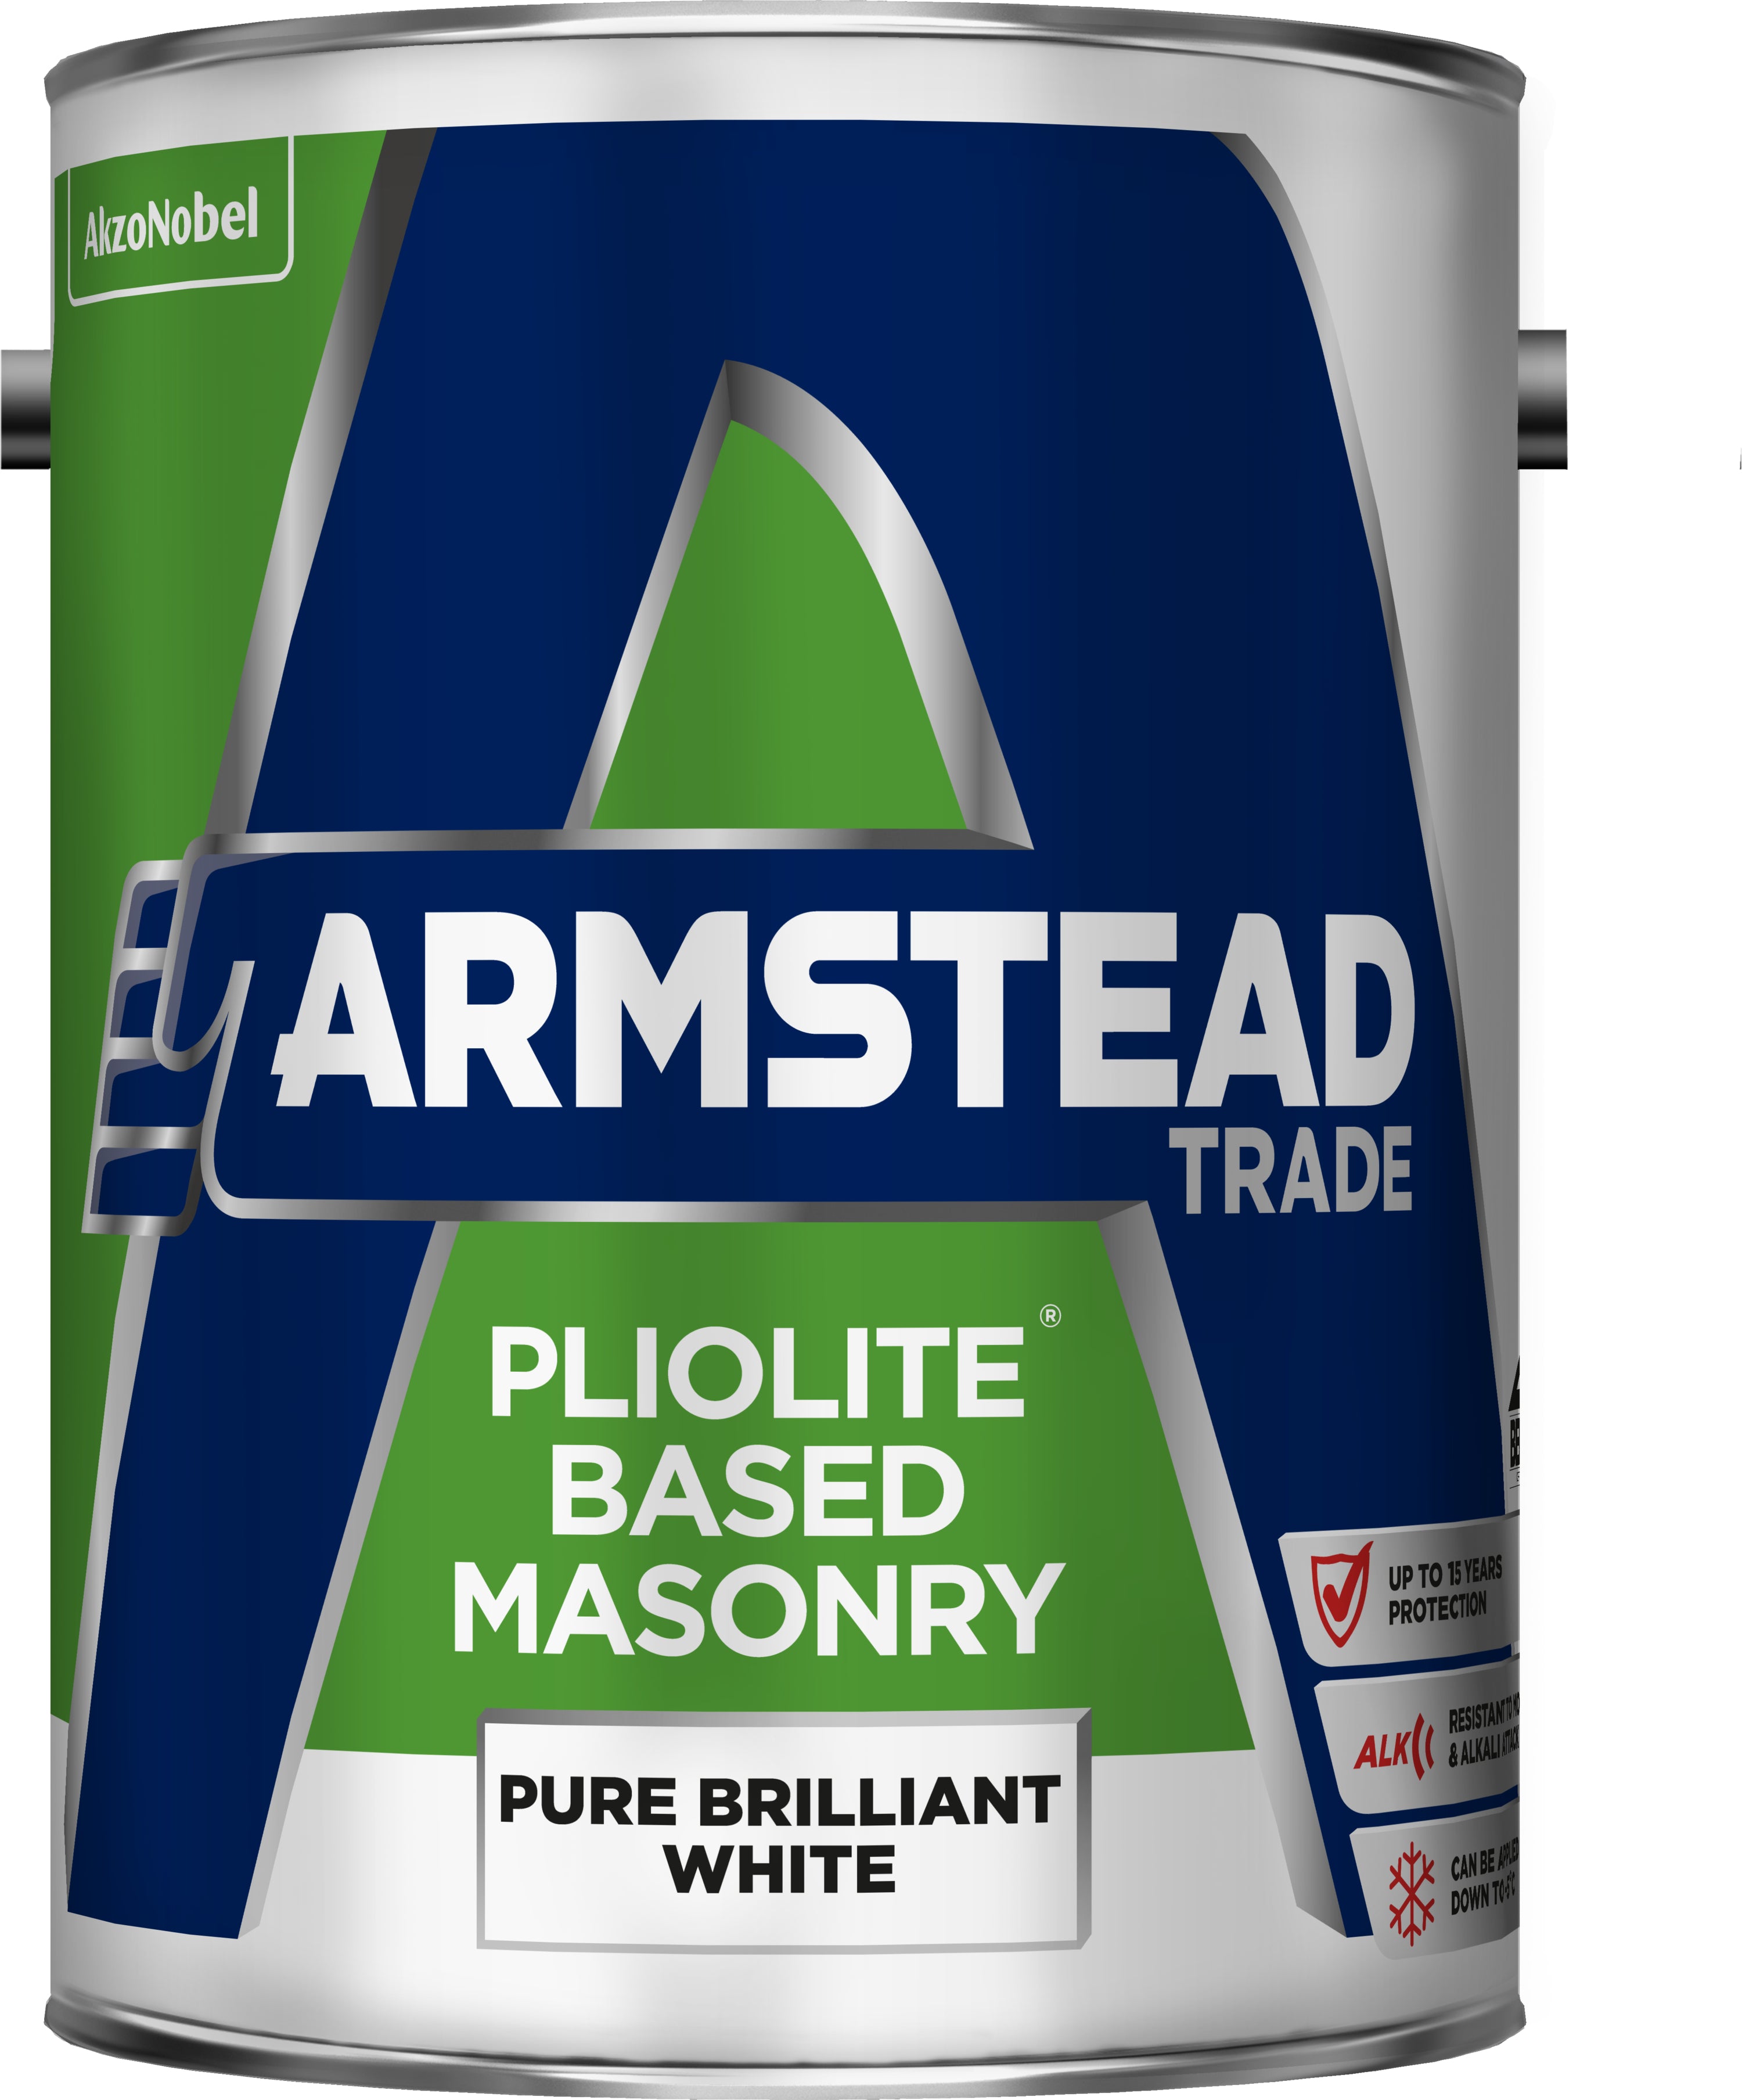 Armstead Trade Pliolite Masonry Brilliant White 5L